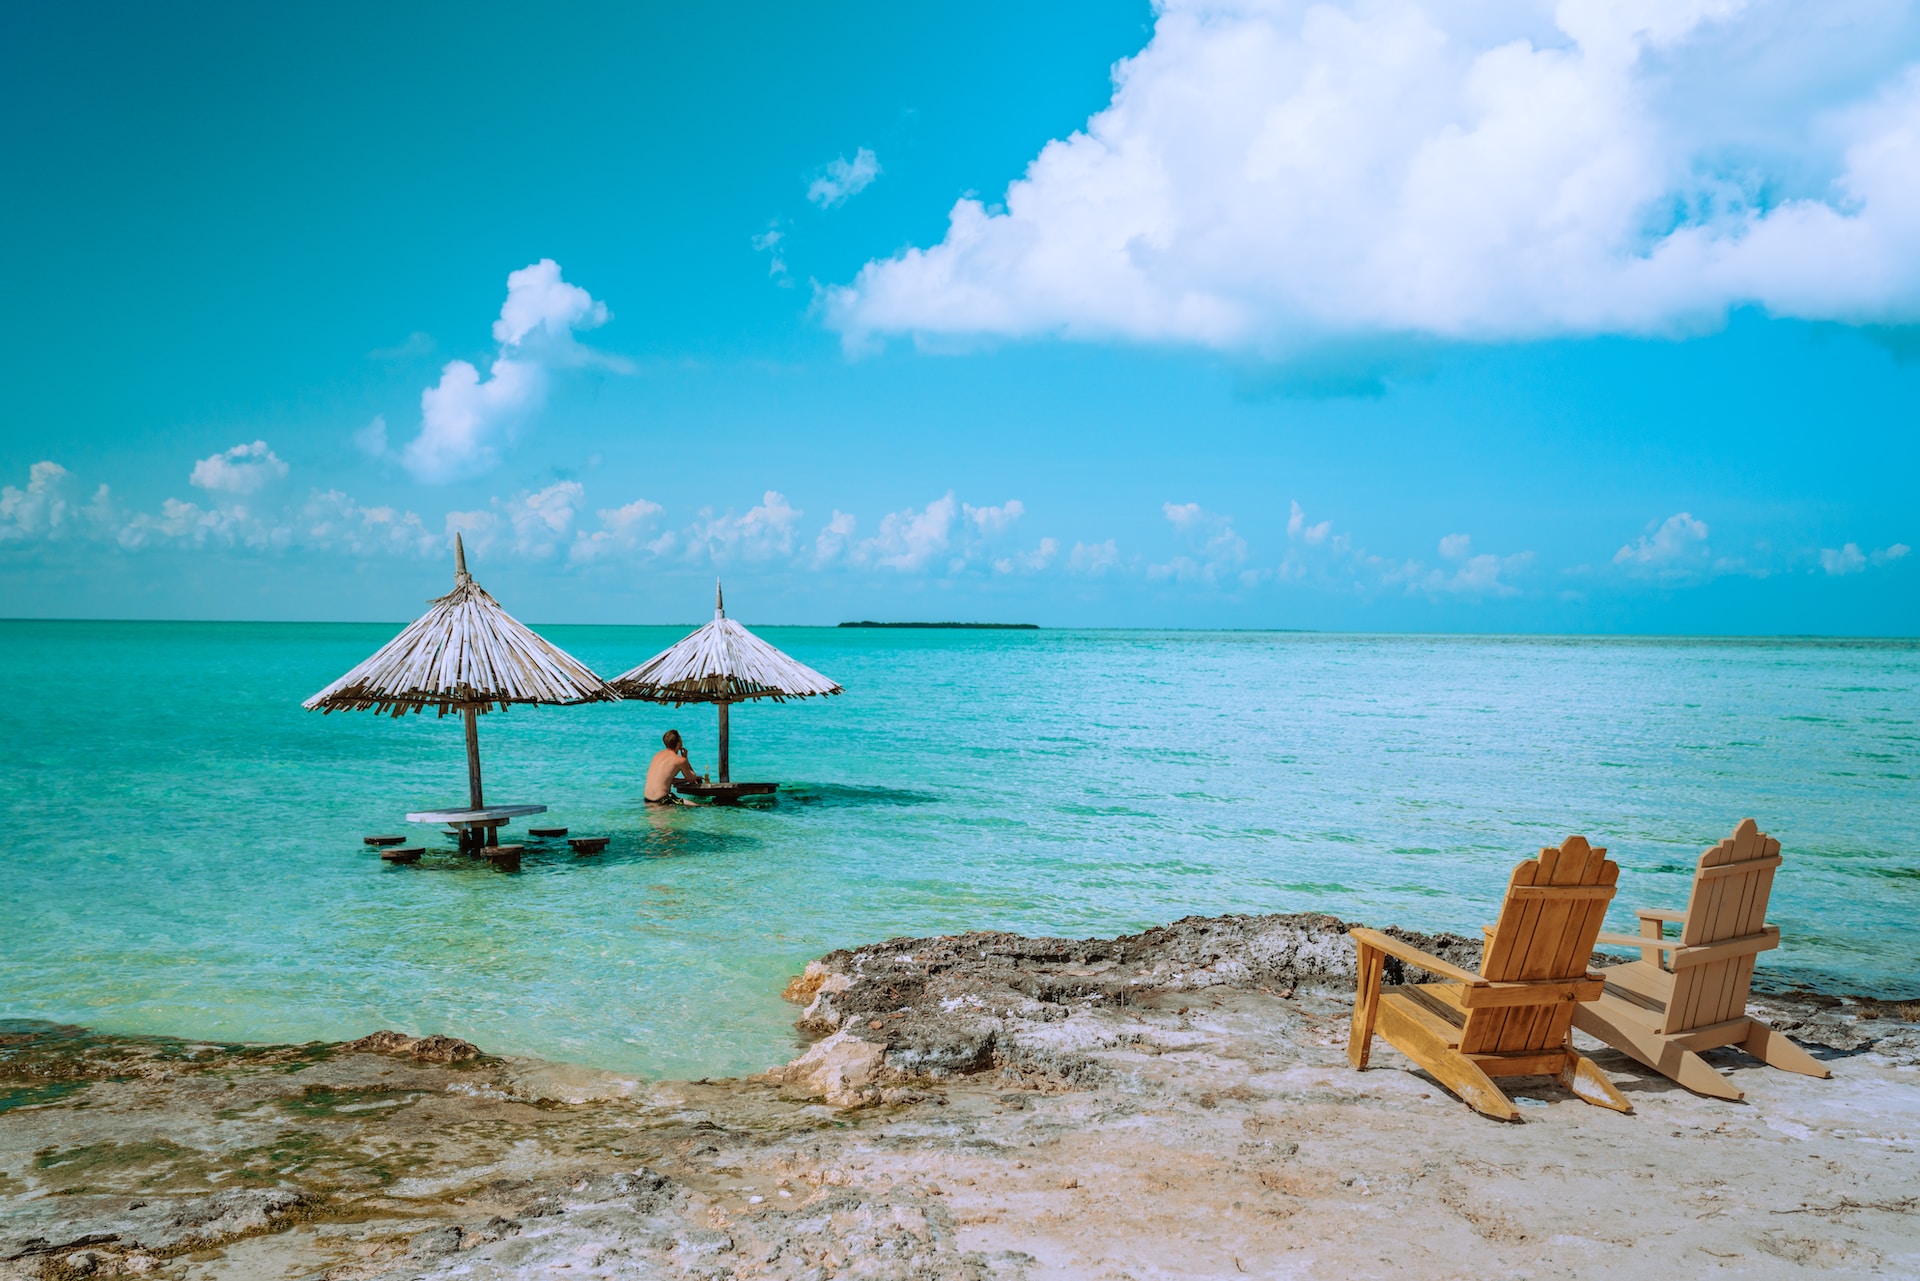 Esplora la barriera corallina del Belize. vista del mare, due lettini in legno a riva, due ombrelloni e una persona in acqua.